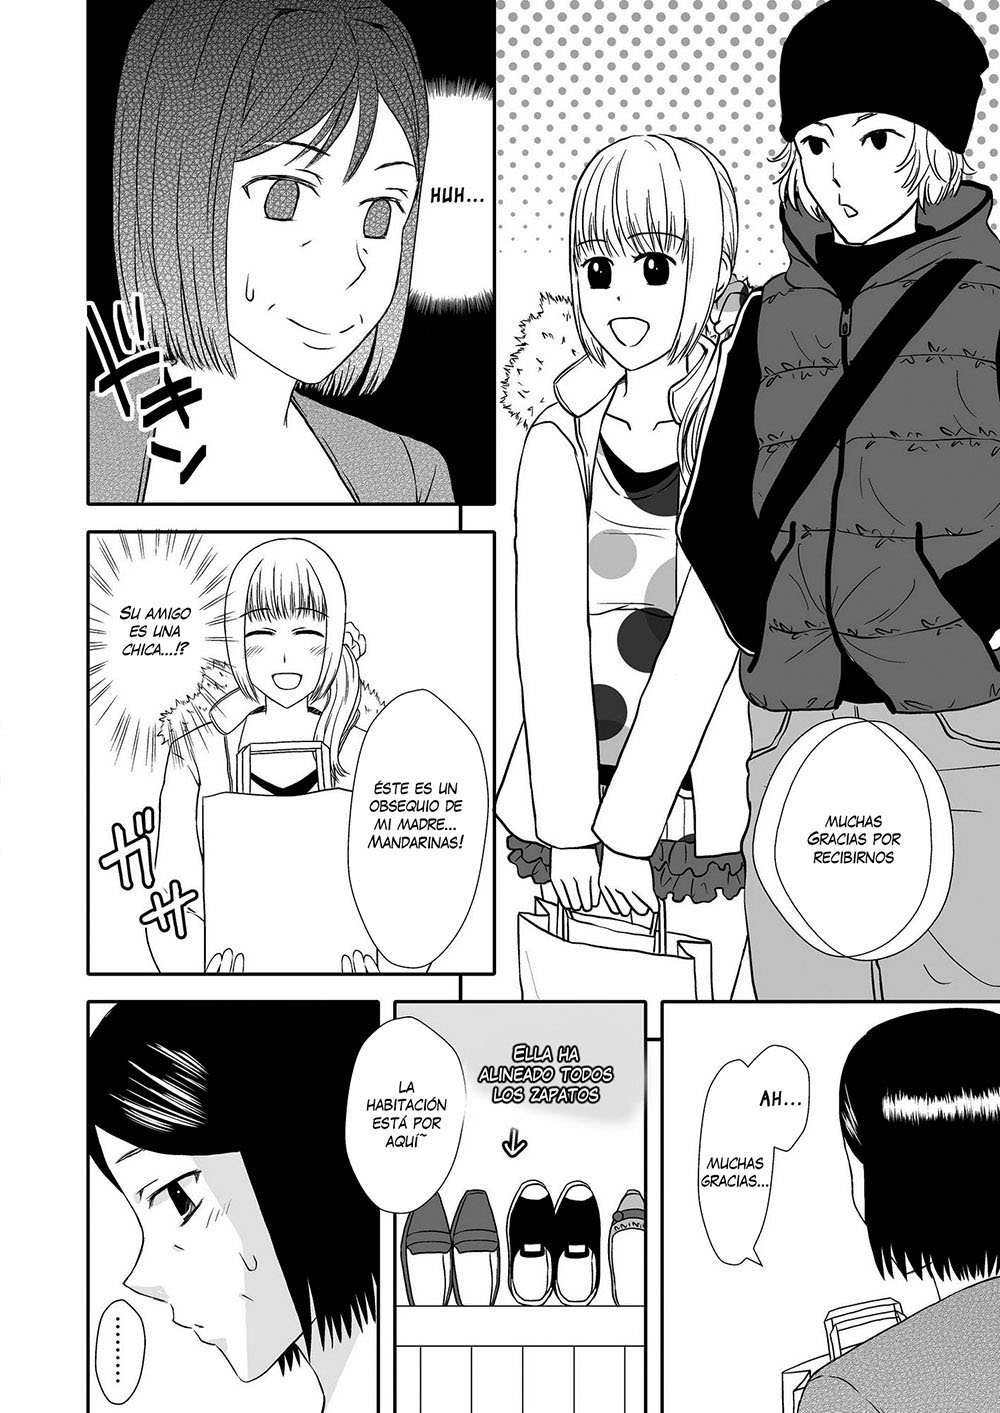 Kaa-san to Koibito Seikatsu #2 - 7 - Comics Porno - Hentai Manga - Cartoon XXX